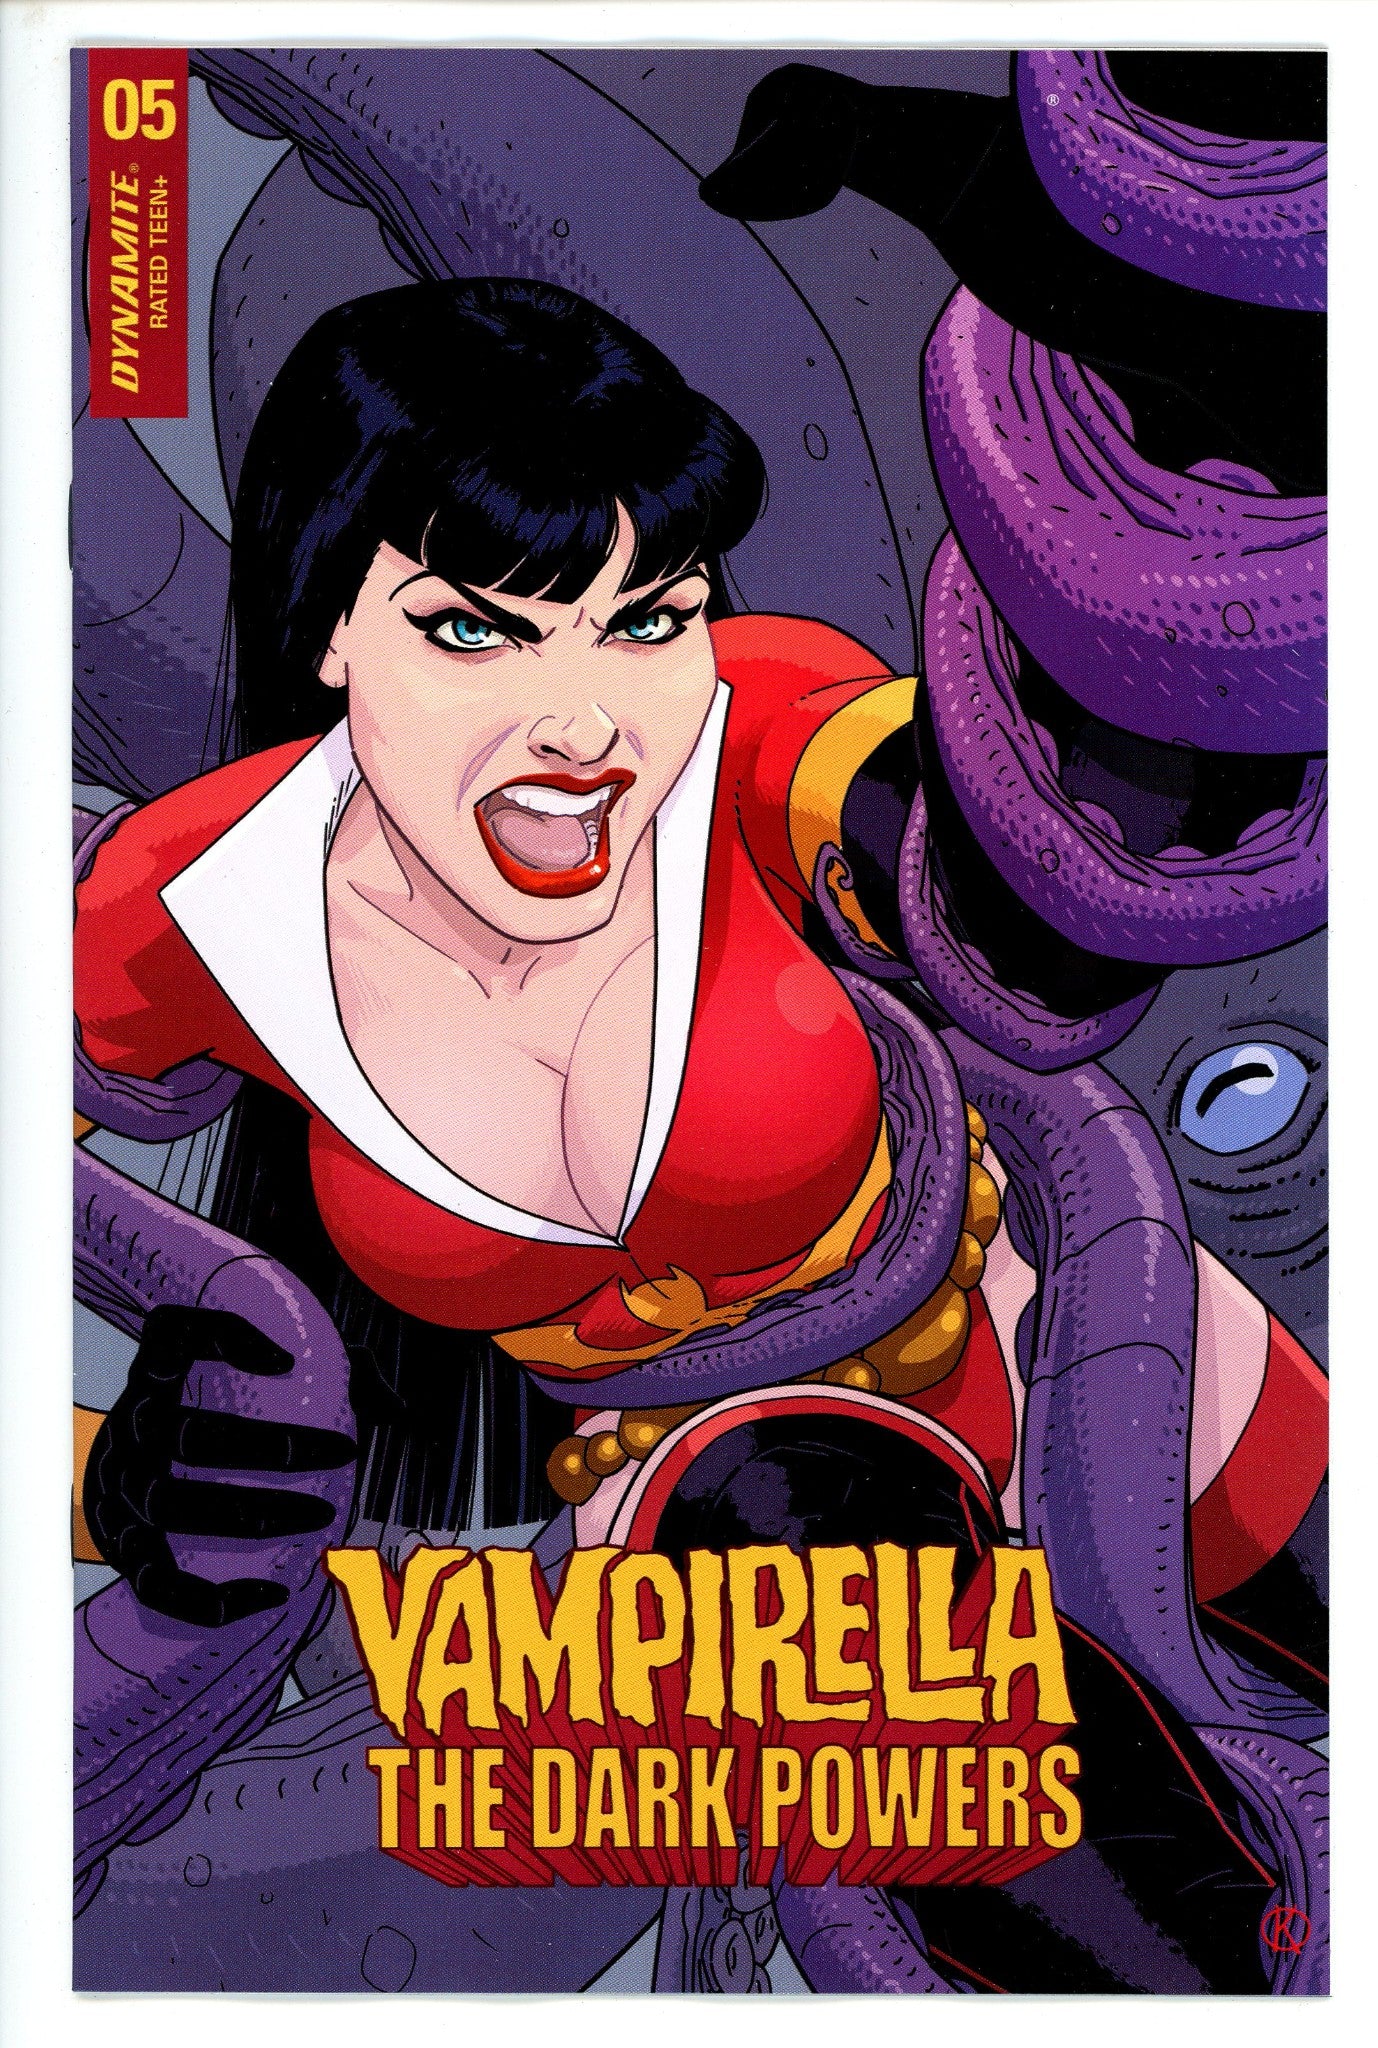 Vampirella Dark Powers 5 Kano Variant-CaptCan Comics Inc-CaptCan Comics Inc